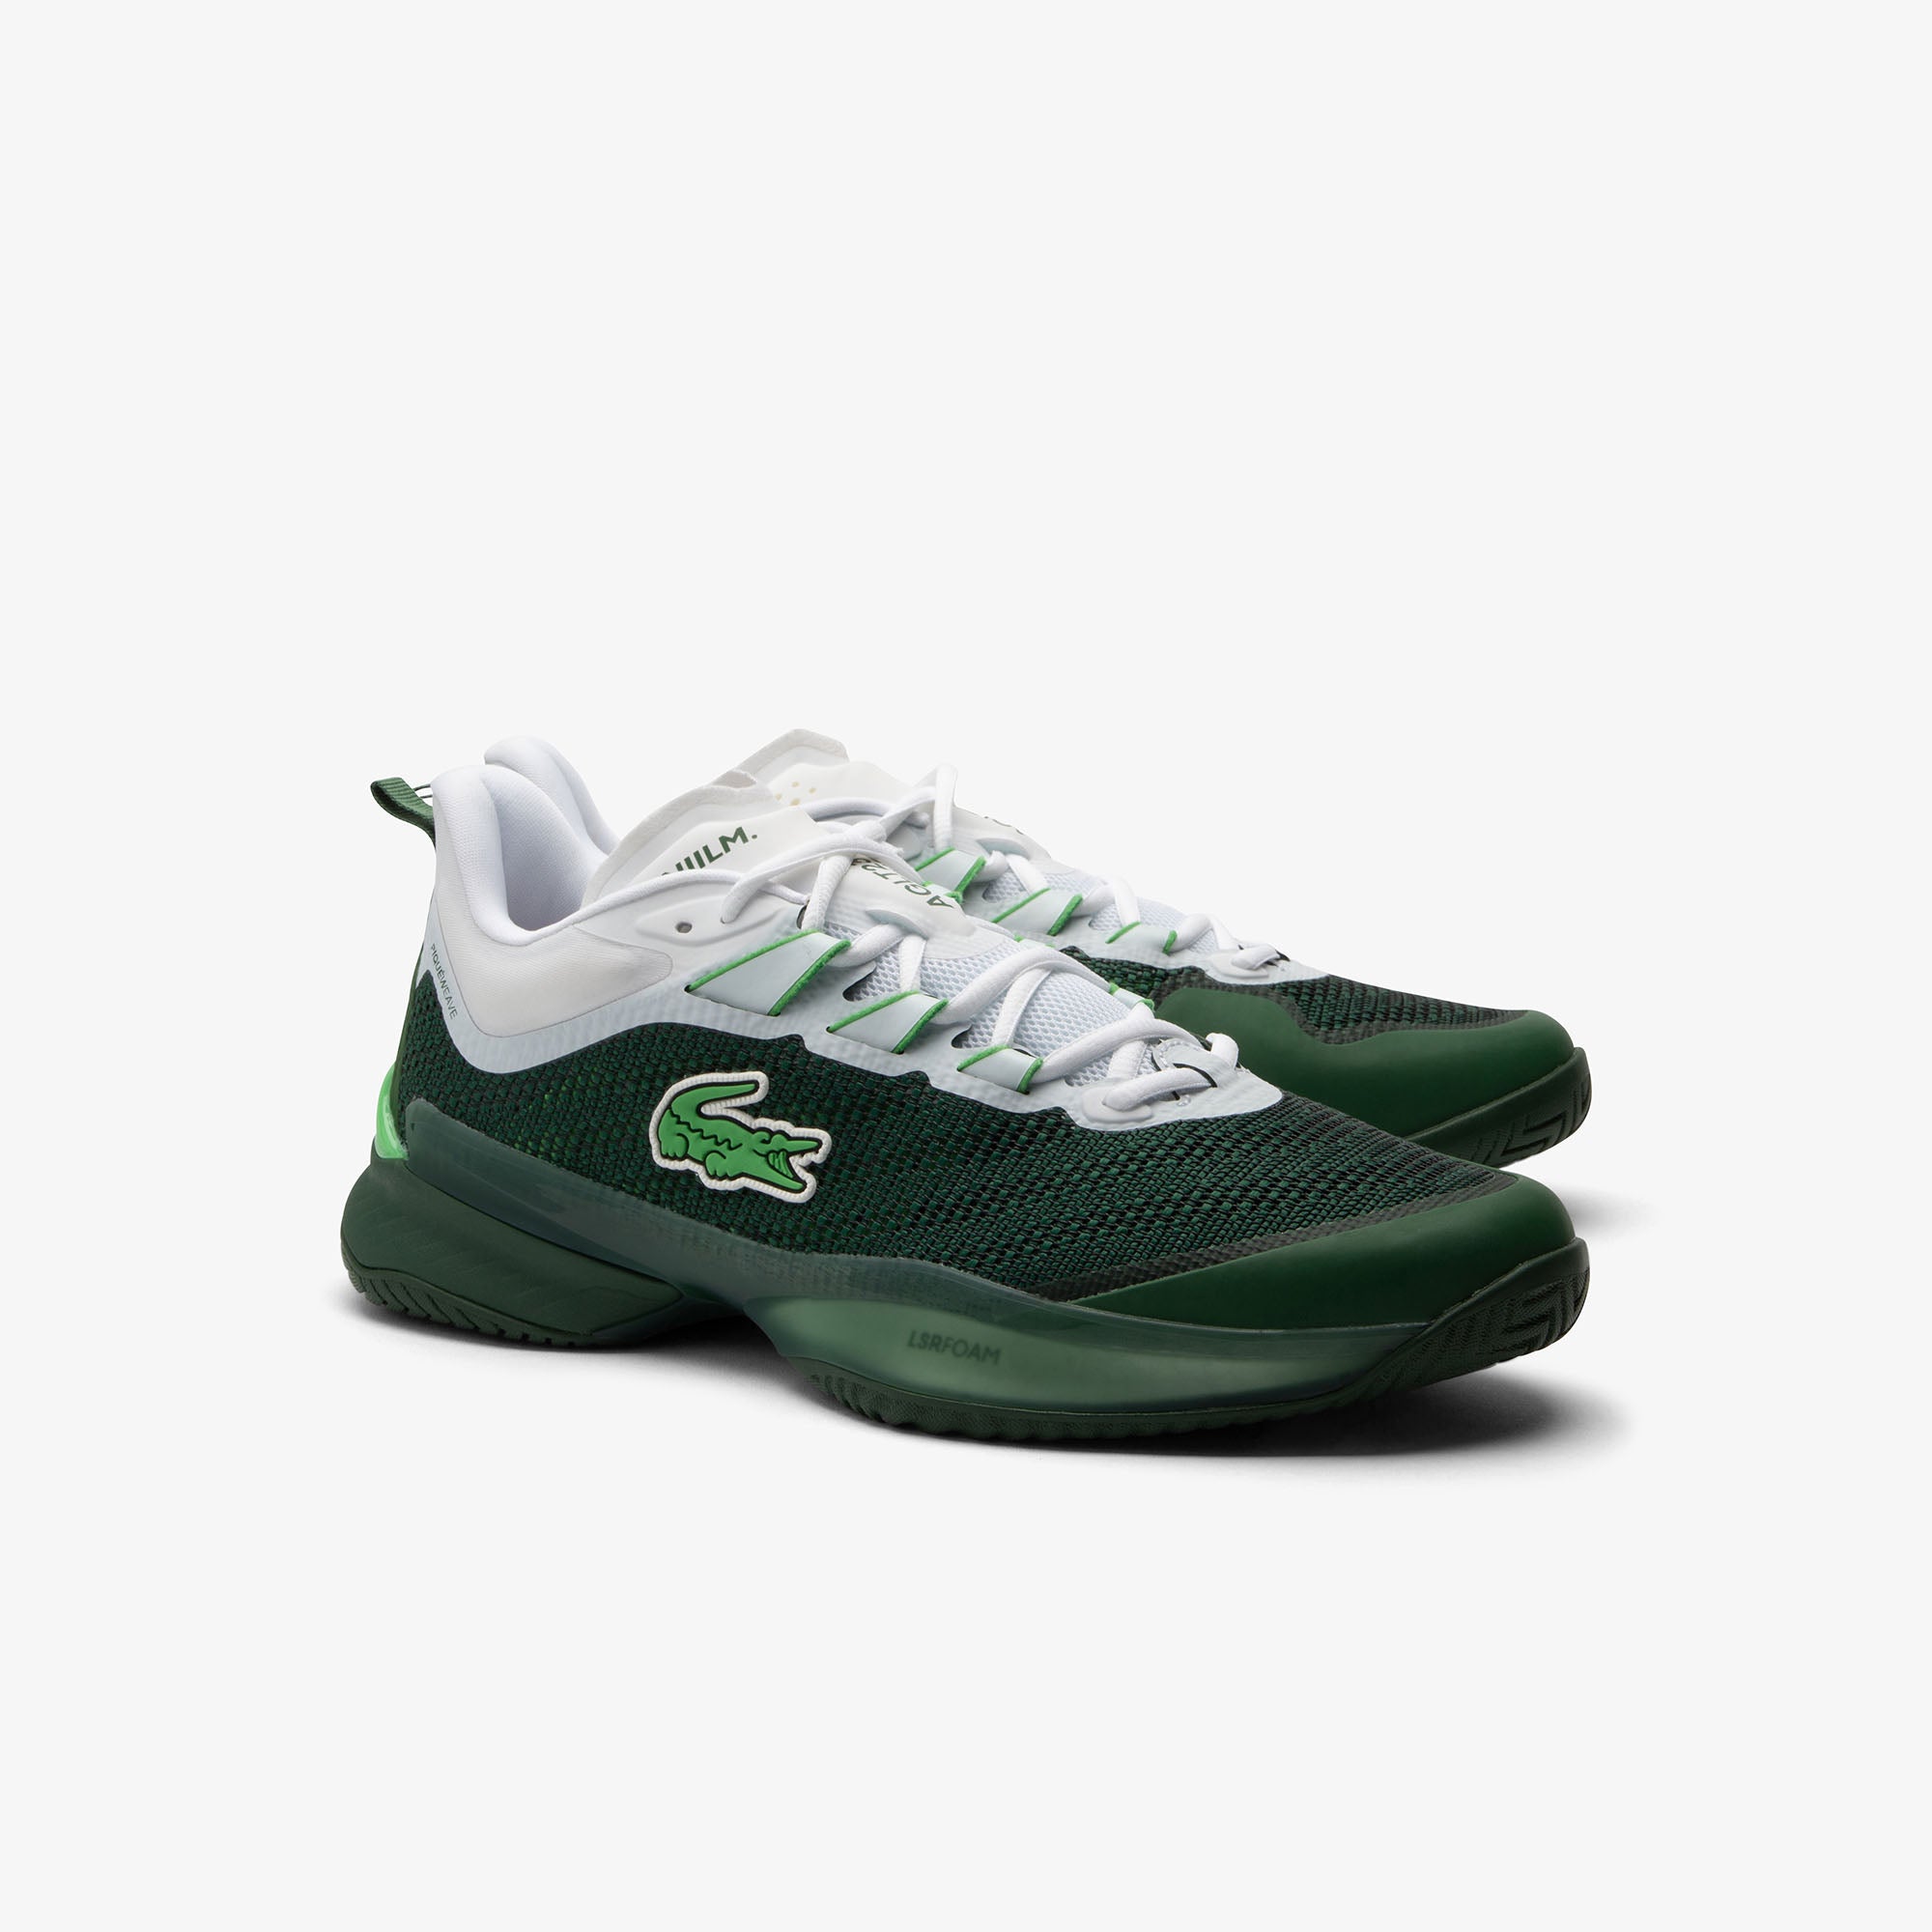 Lacoste x Daniil Medvedev AG-LT23 Ultra Tennis Shoes (Men's) - Dark Green/White